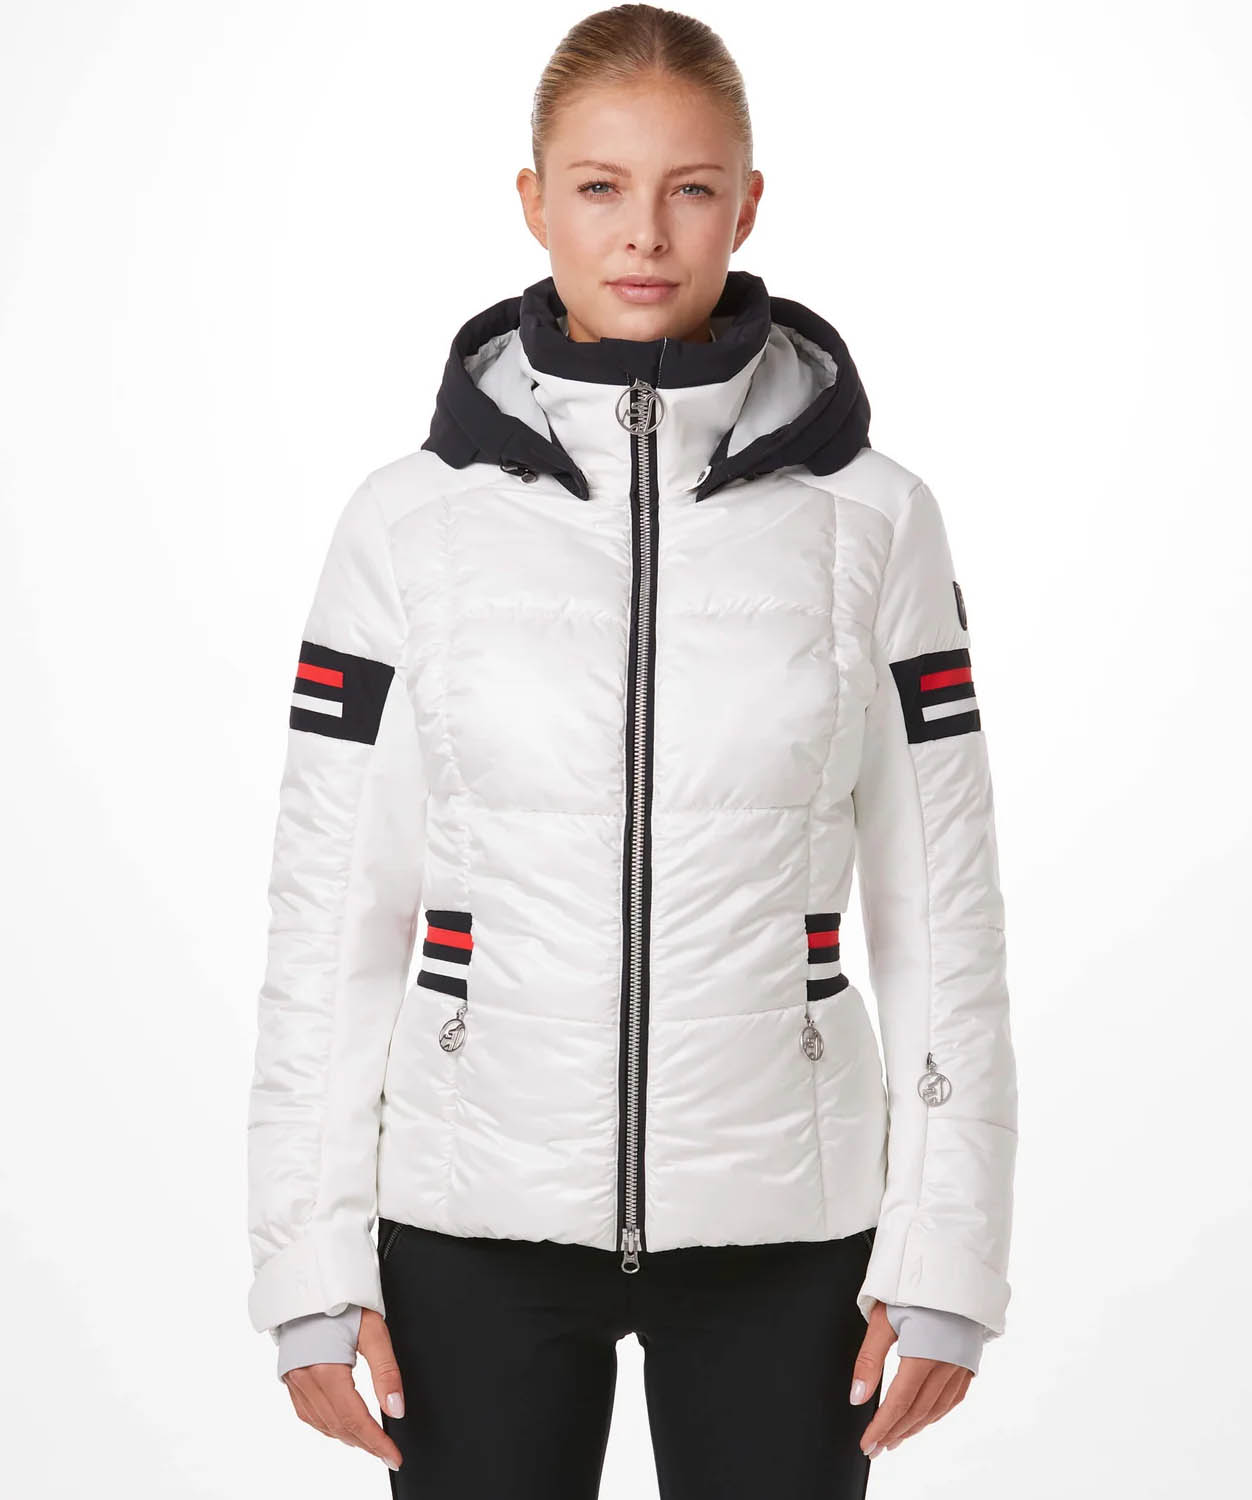 Women's Nana Ski Jacket